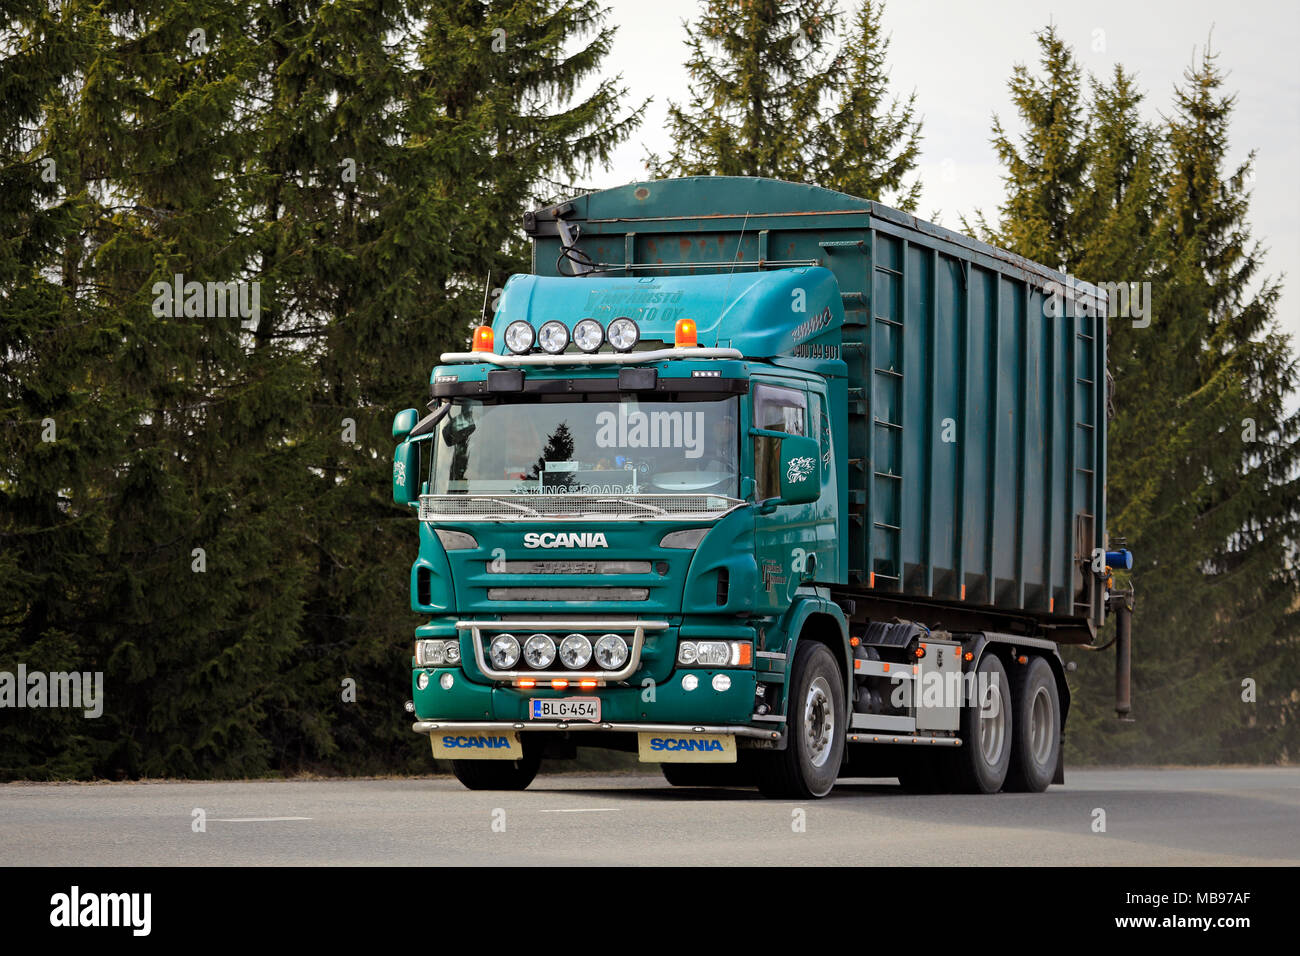 Campaña de otoño de accesorios de Scania